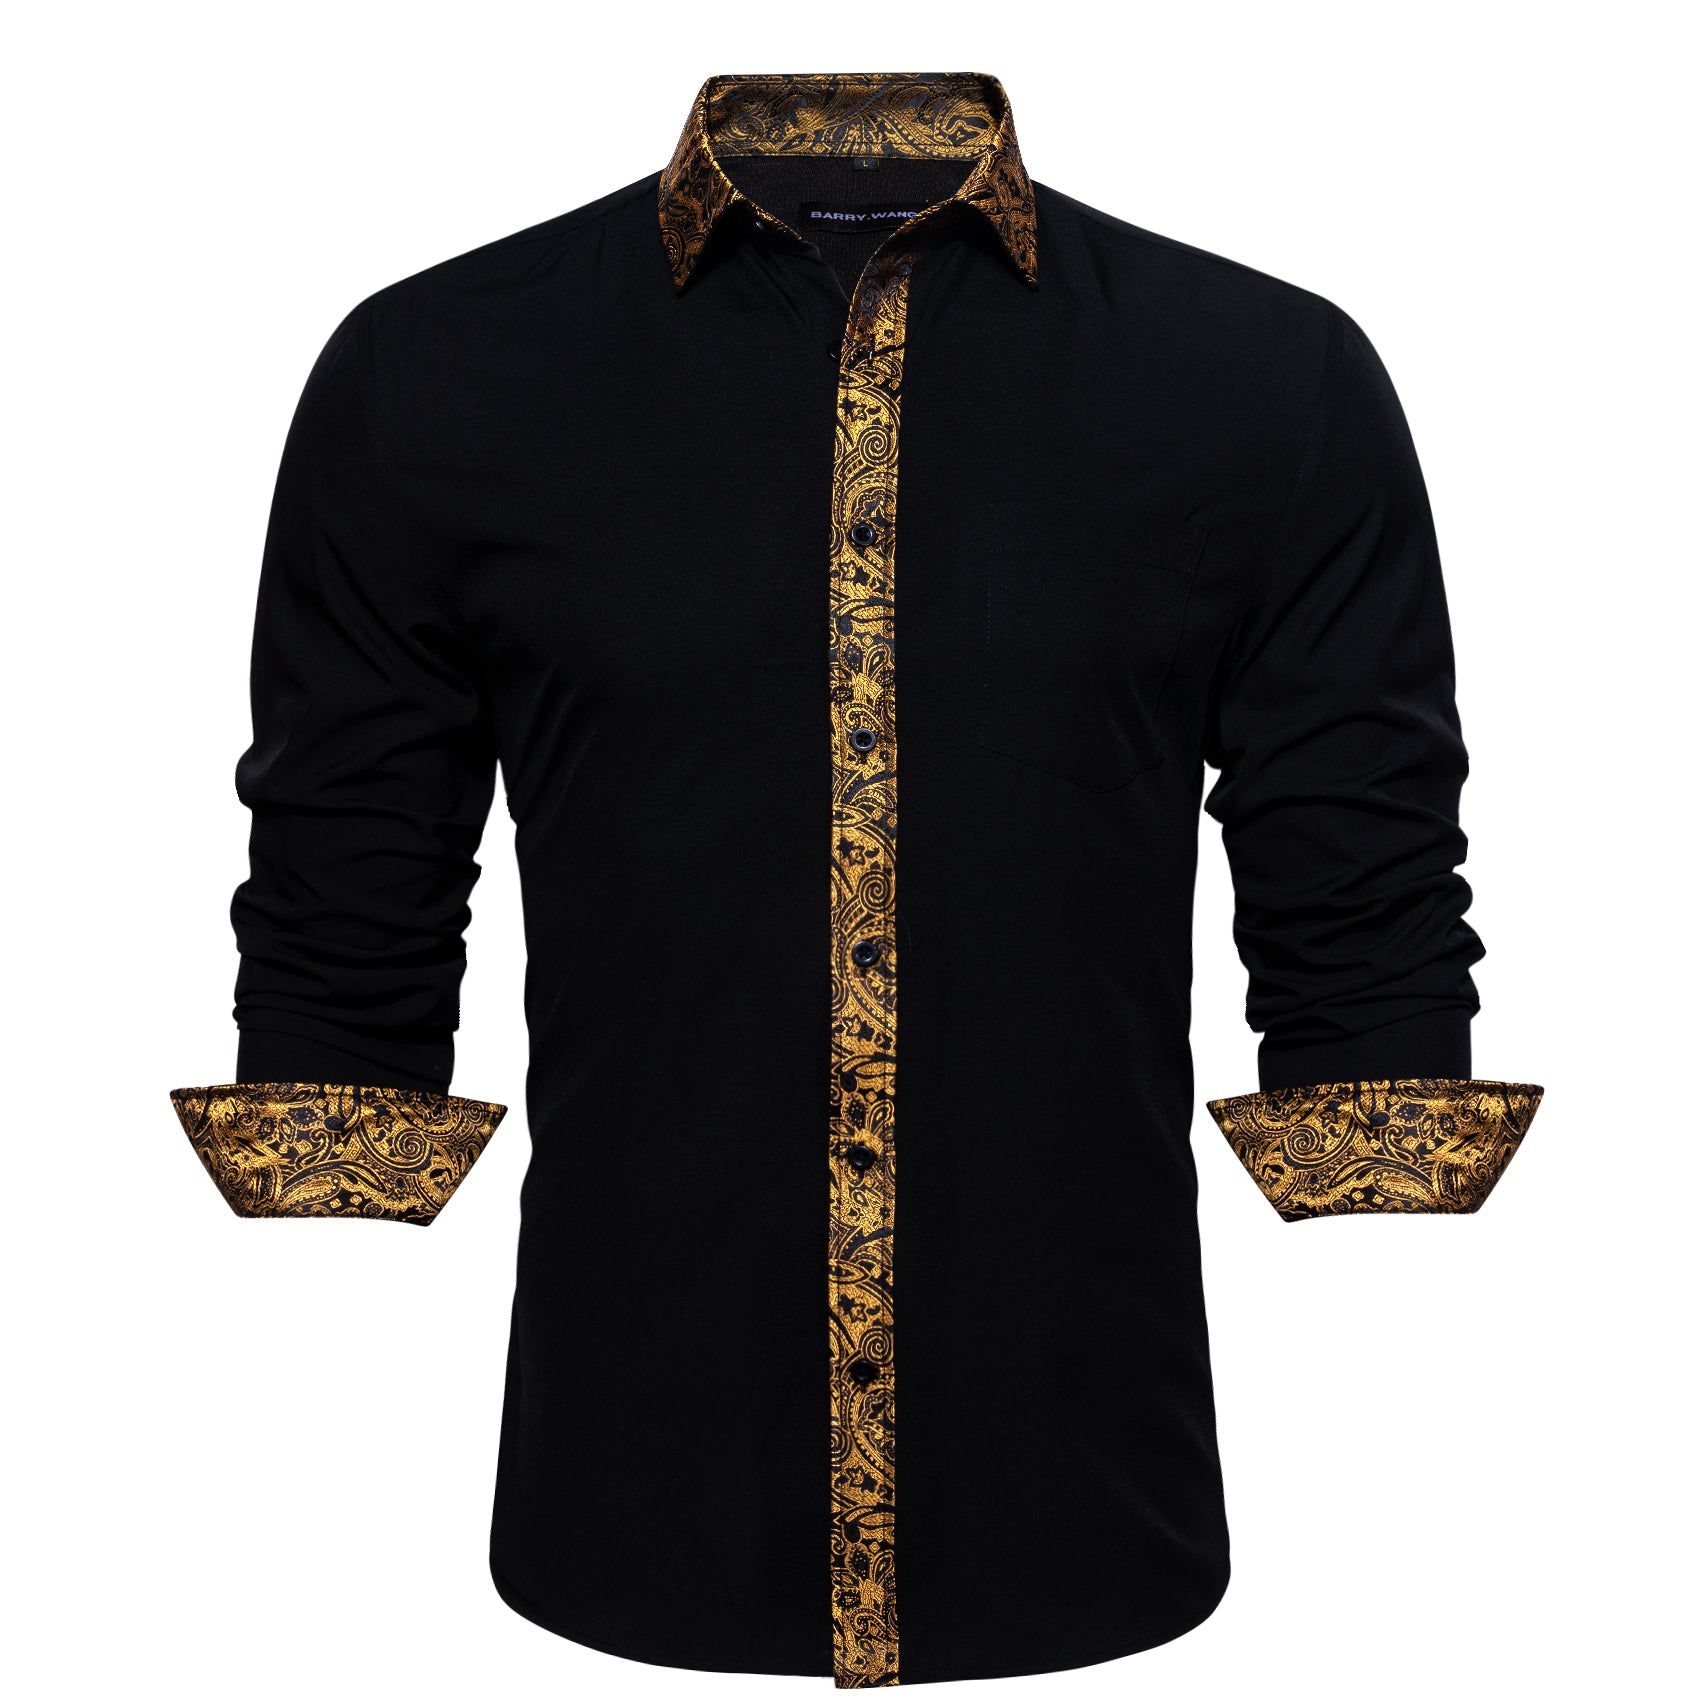 Barry.wang Button Down Shirt Black Golden Splicing Men's Business Shirt